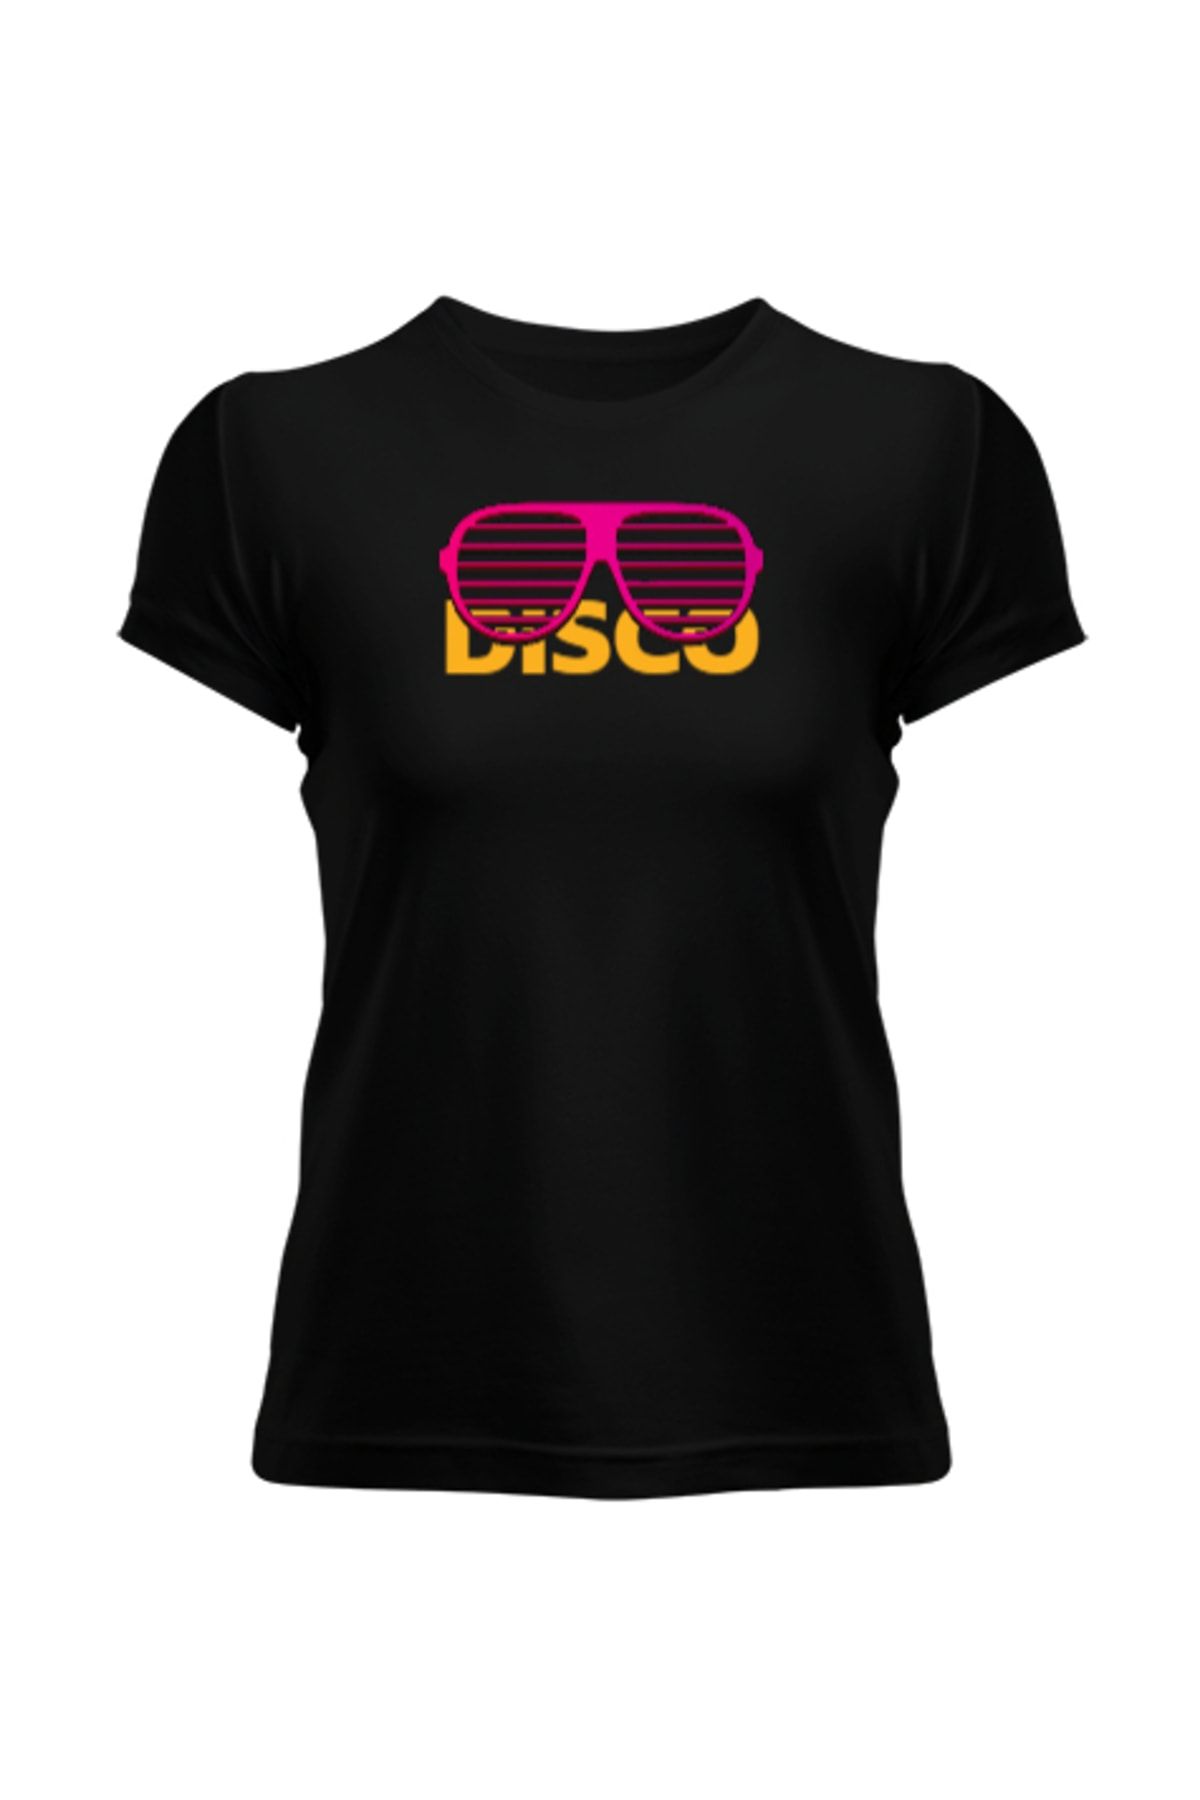 Tisho Dısco Glass Siyah Kadın Tişört